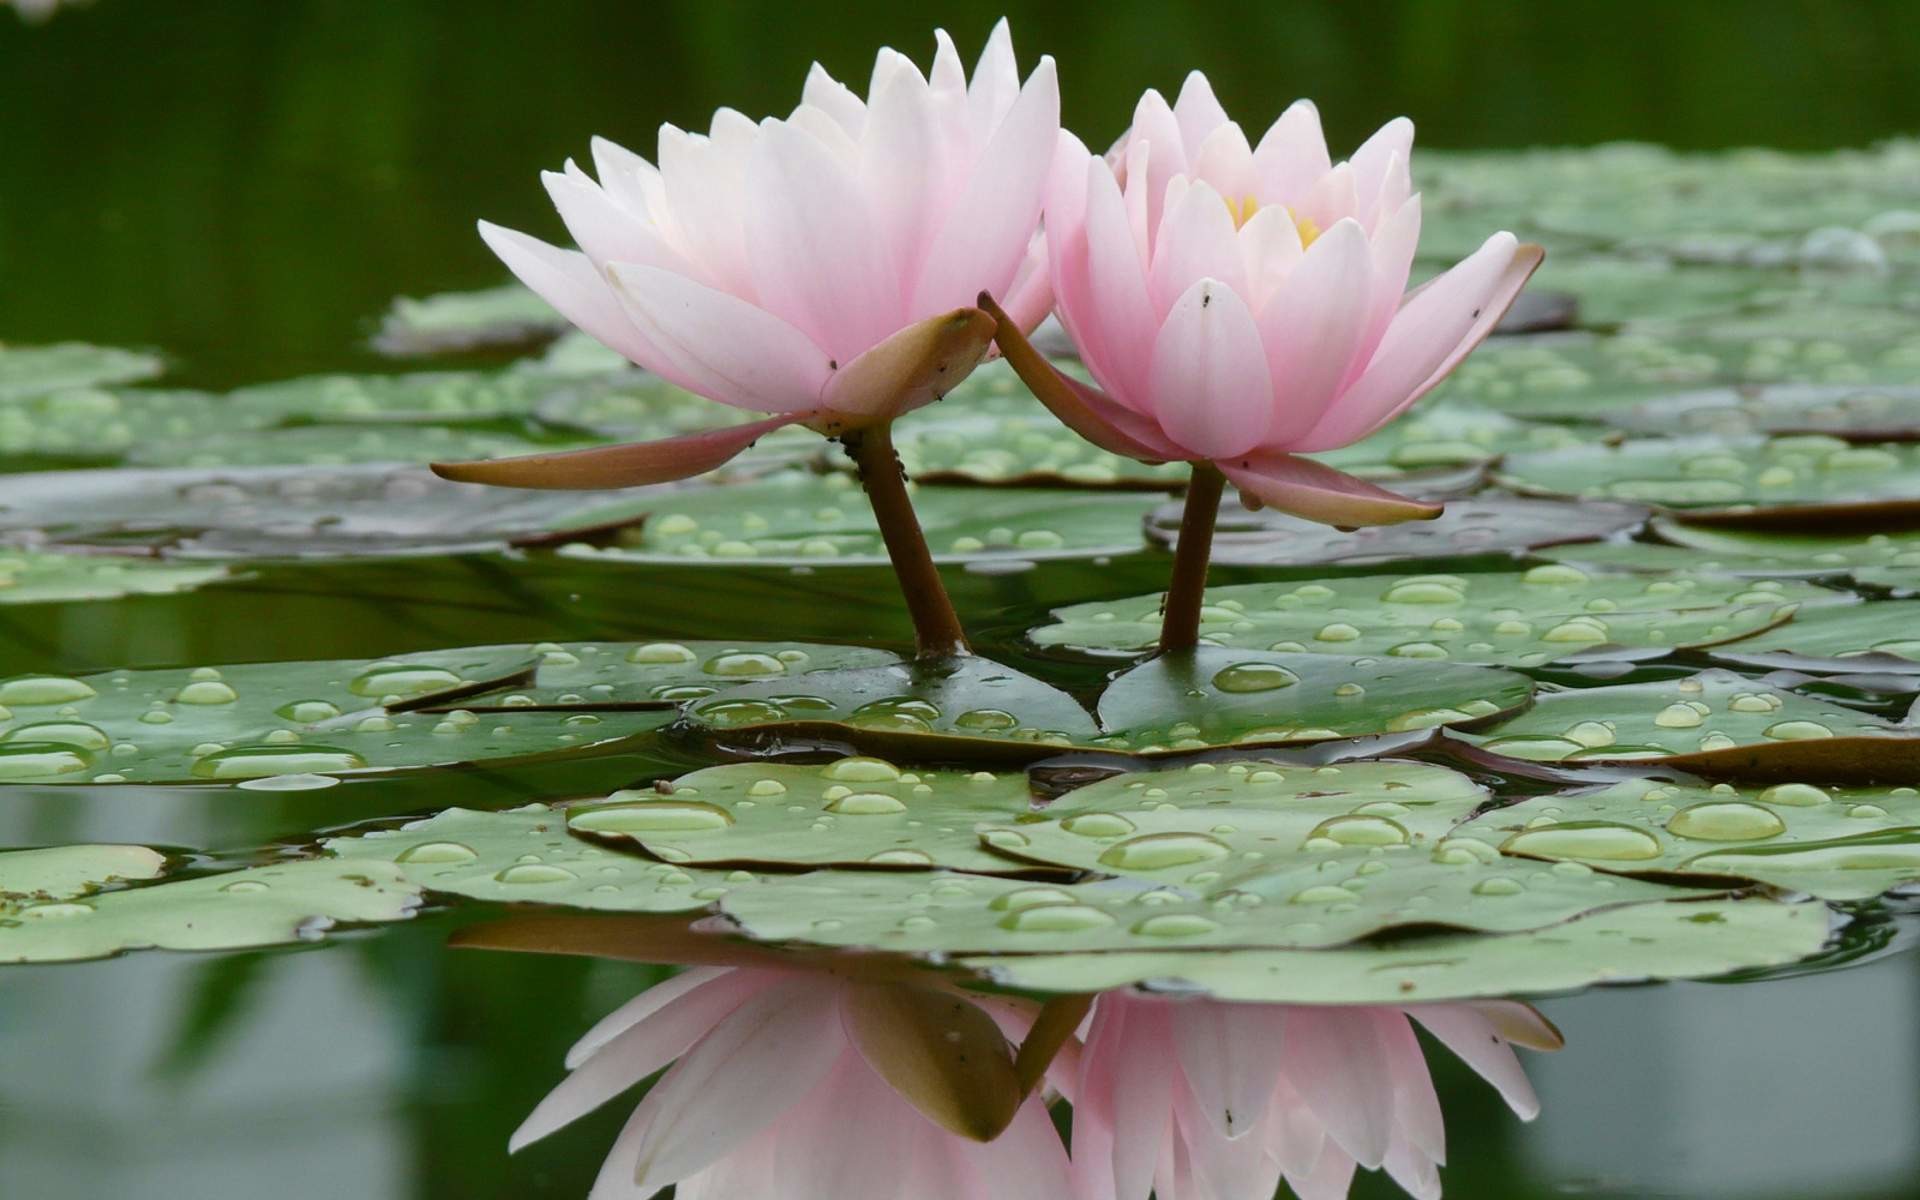 papel de loto,flor,lirio de agua blanca fragante,planta floreciendo,loto sagrado,loto